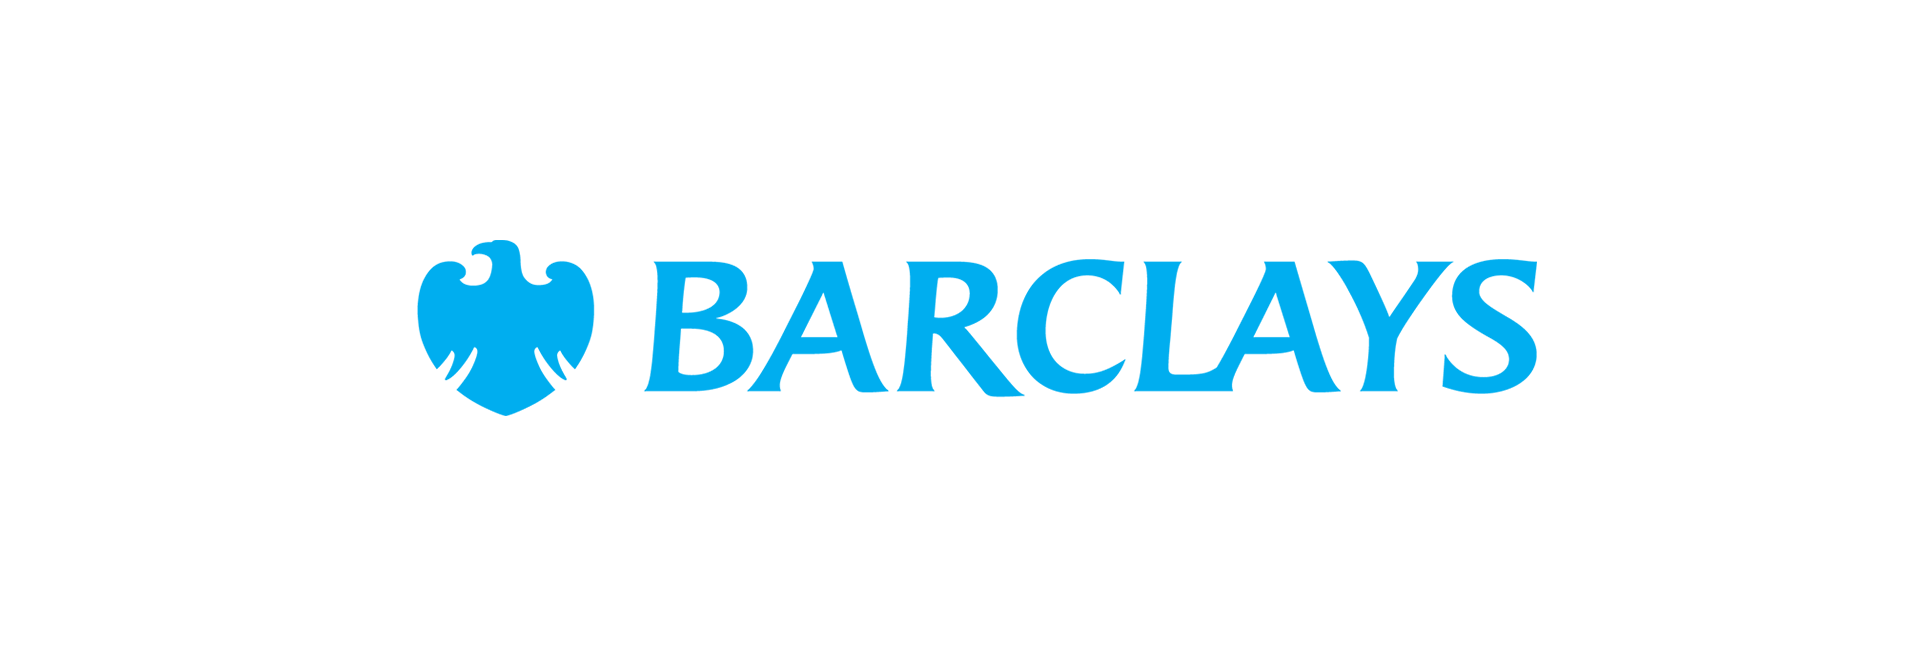 Barclaycard wird zu Barclays